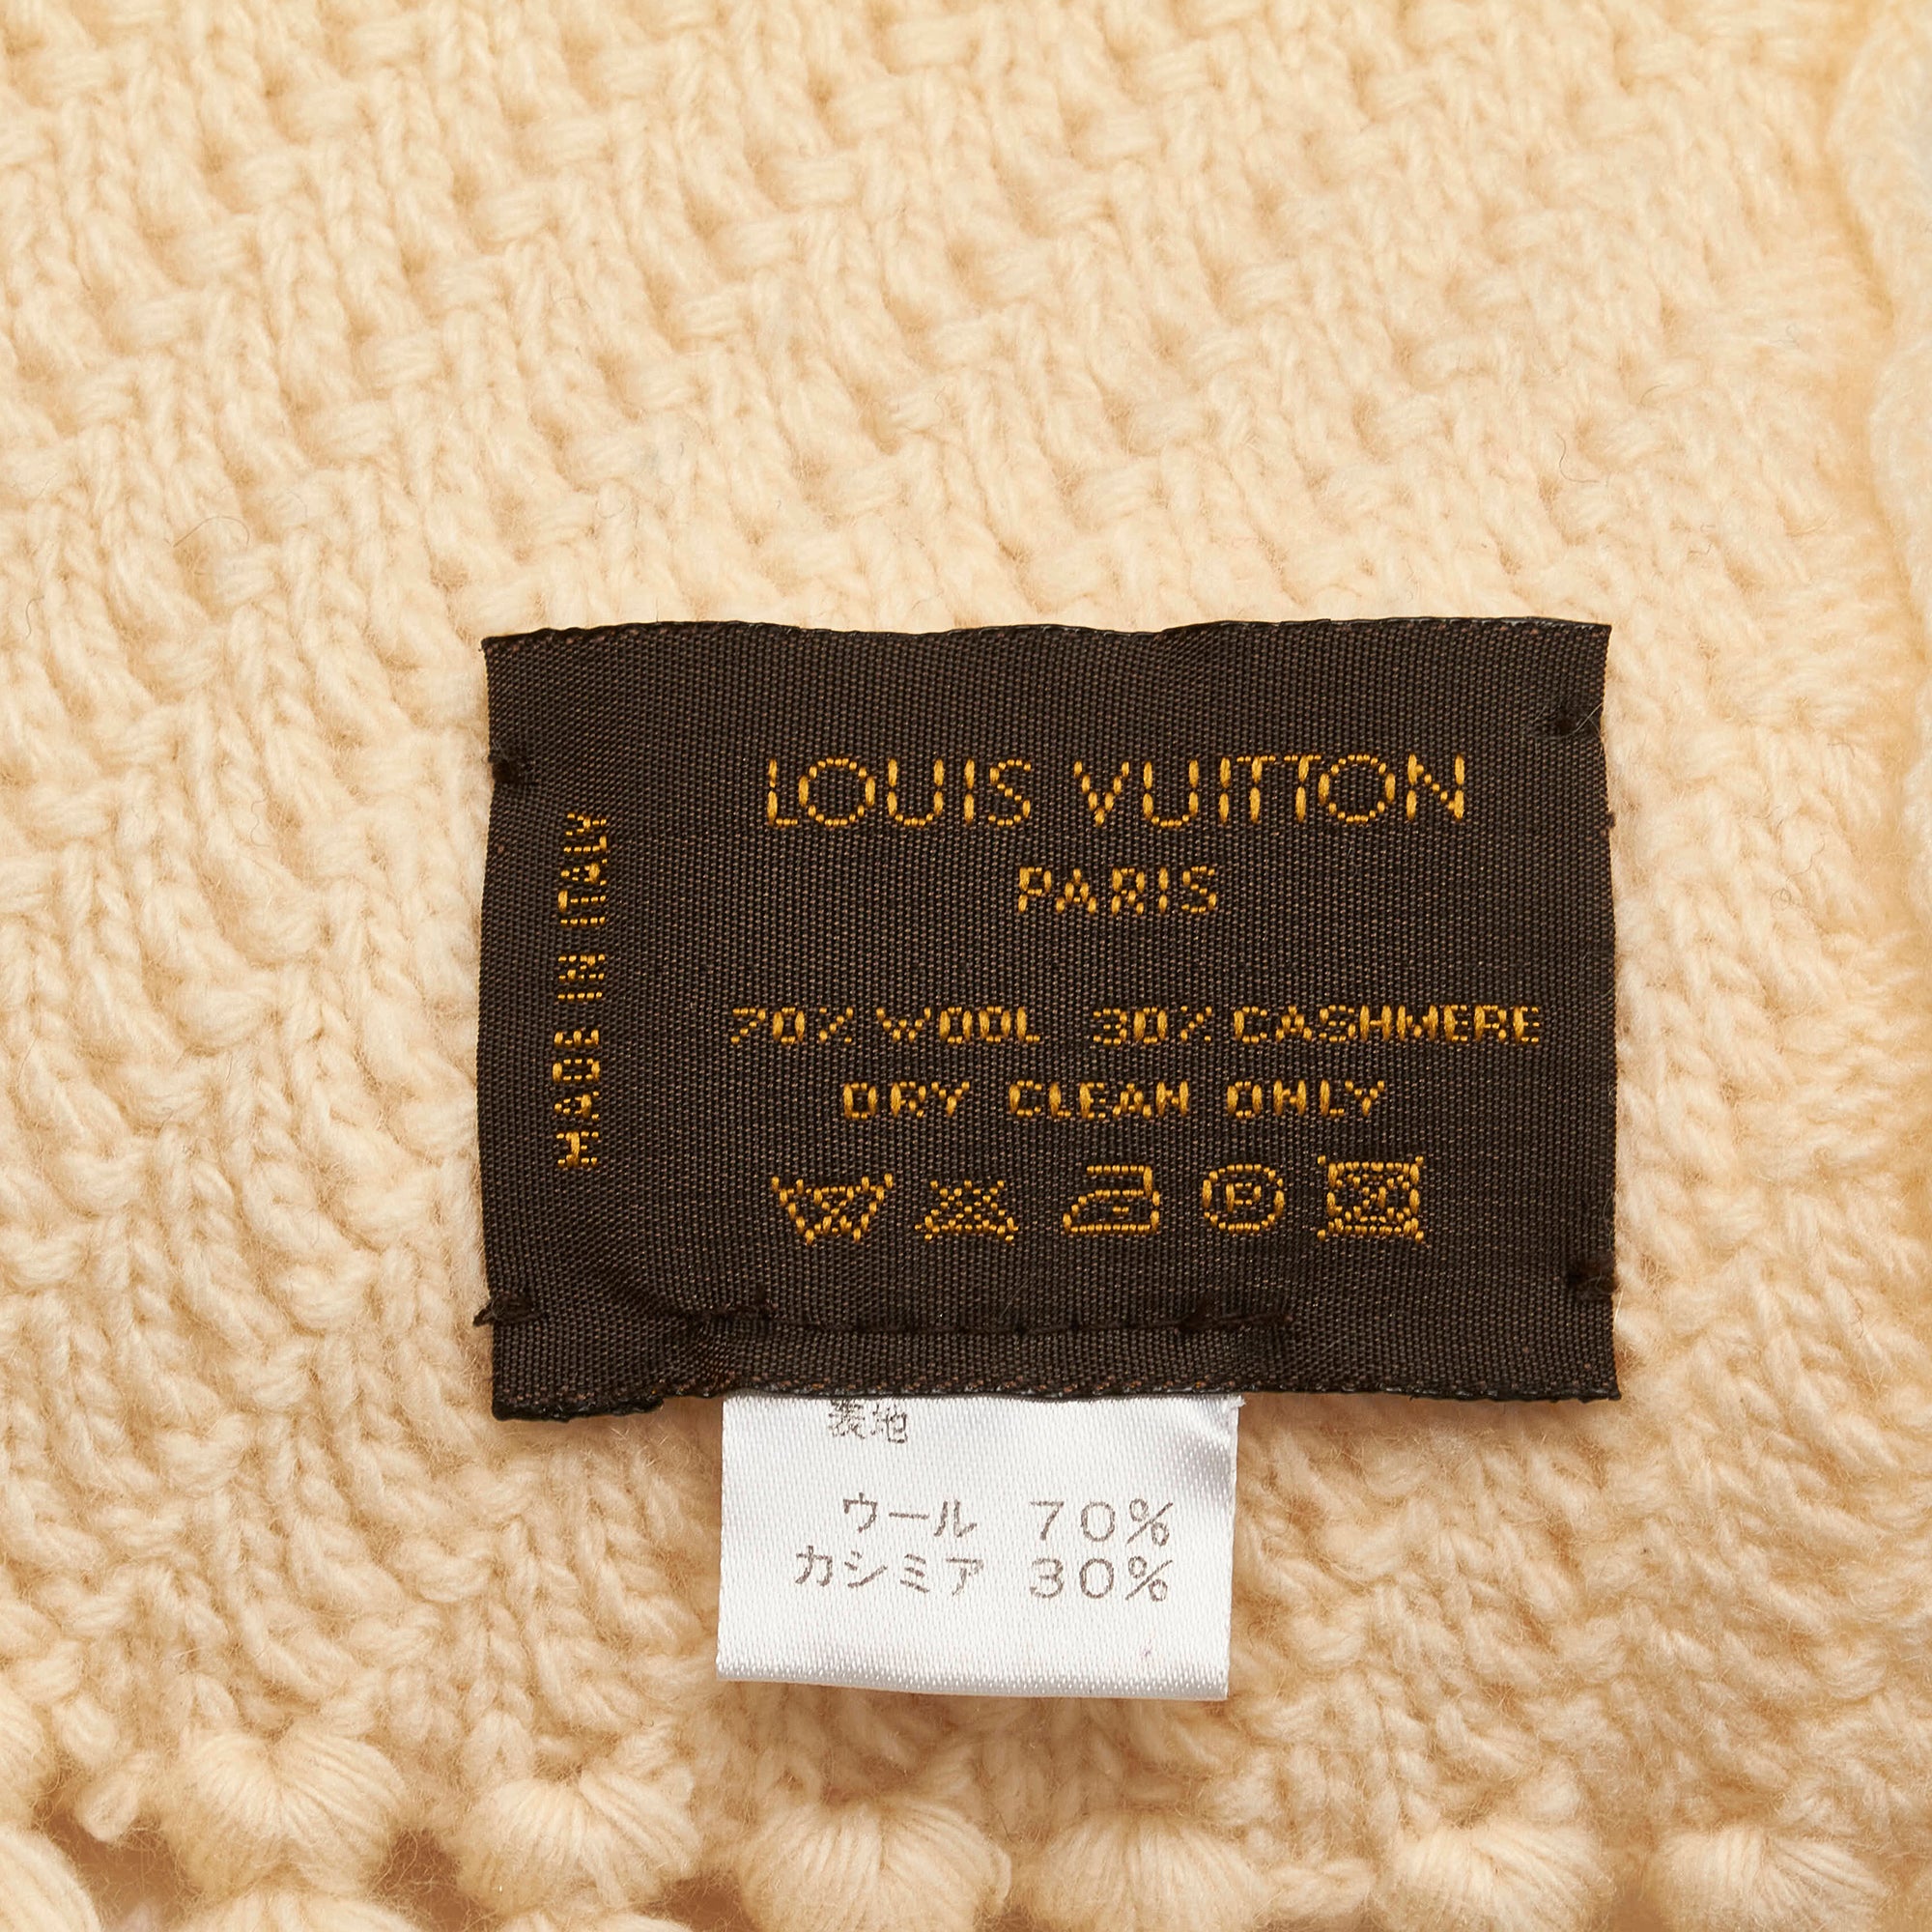 Louis Vuitton Paris Cashmere Scarf